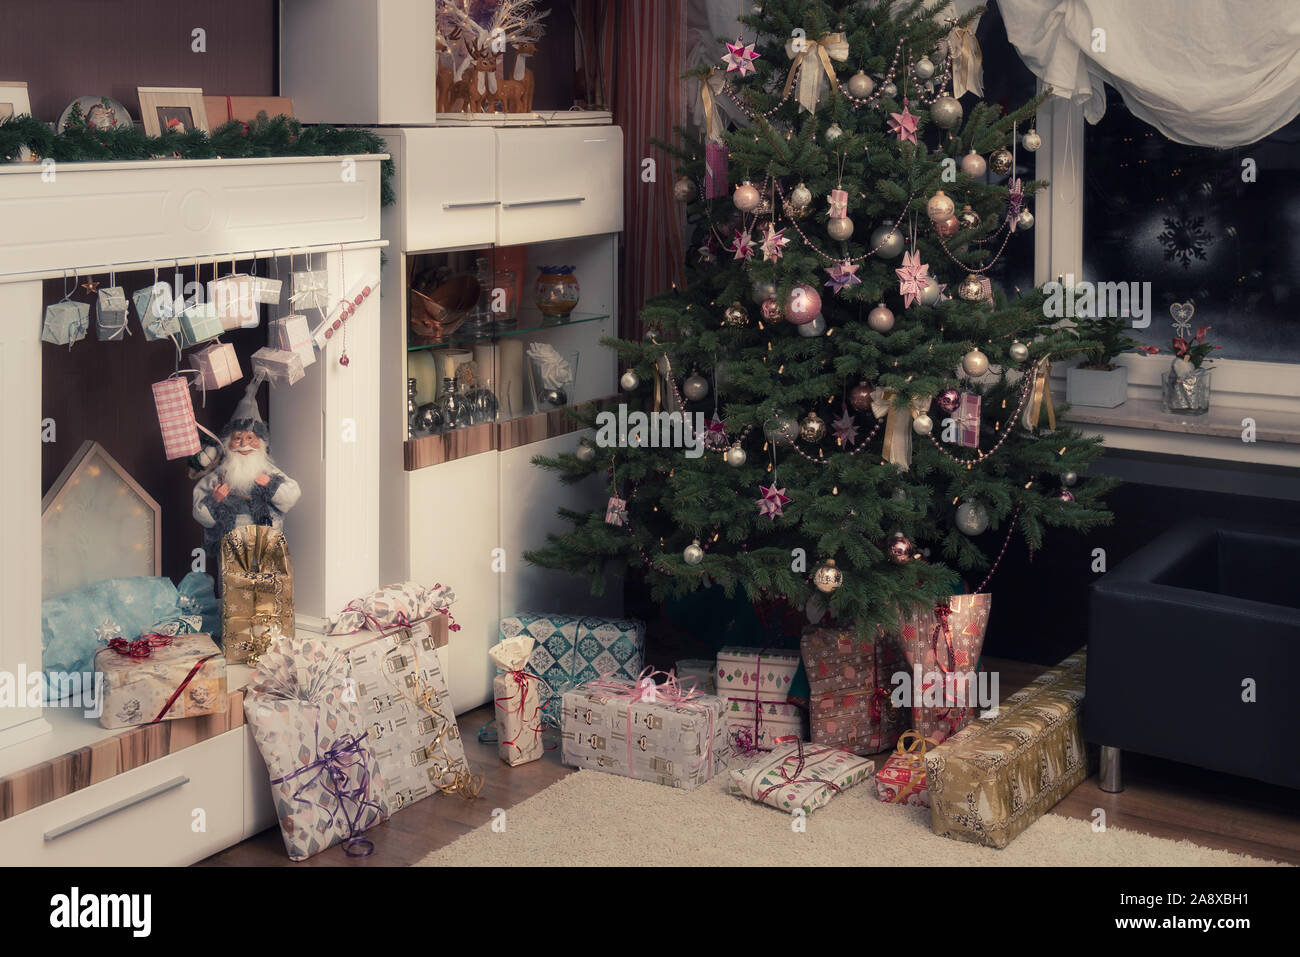 È Notte Santa, l'albero di Natale decorato è nel soggiorno e qui di seguito sono avvolti i regali di Natale. Immagine autentica di una festa privata. Foto Stock